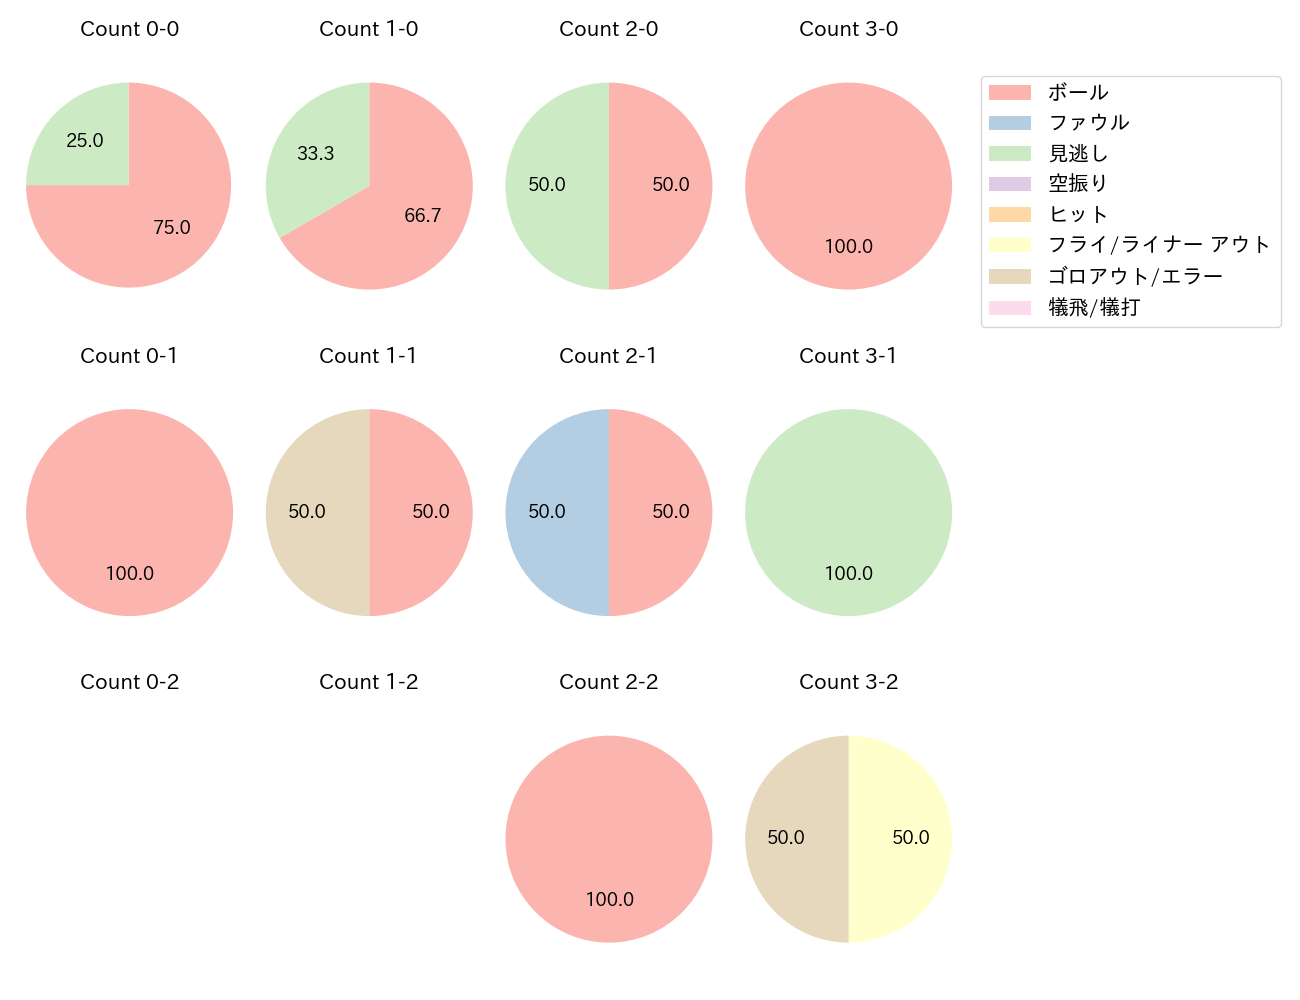 福田 周平の球数分布(2021年3月)